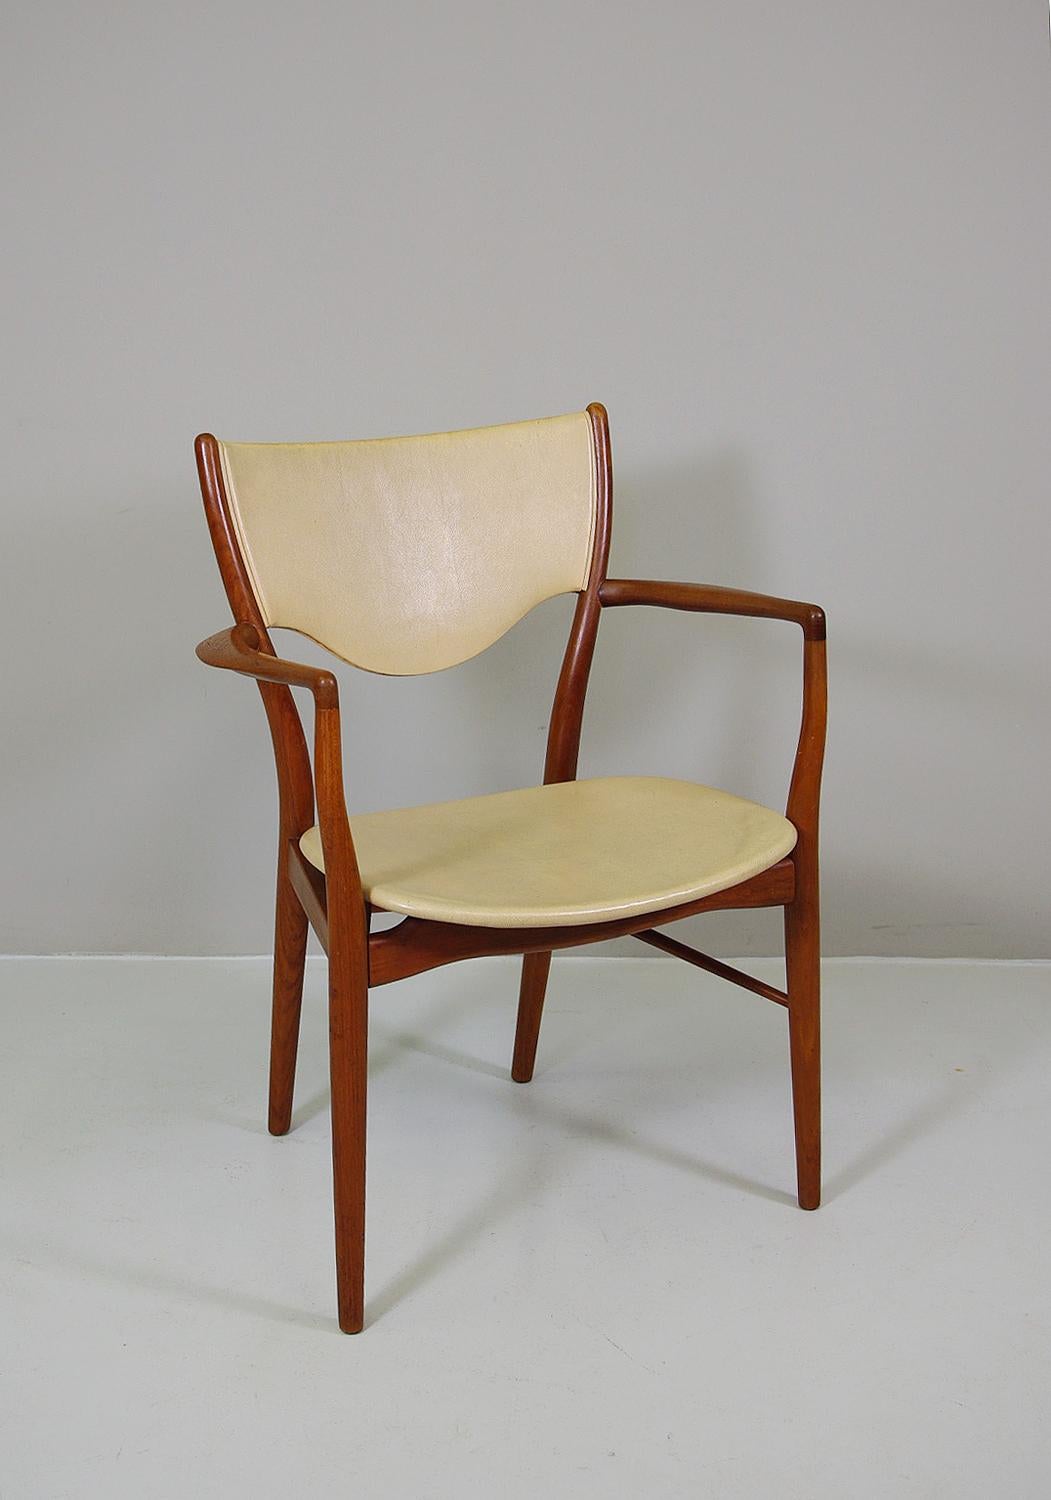 Ce fauteuil emblématique en bois d'acajou massif est recouvert d'une housse en parchemin de peau de chèvre extrêmement élégante et rare. Fabriqué en 1946 par Bovirke Danemark.
Le BO46 est un exemple des plus belles réalisations de Finn Juhls. Il a